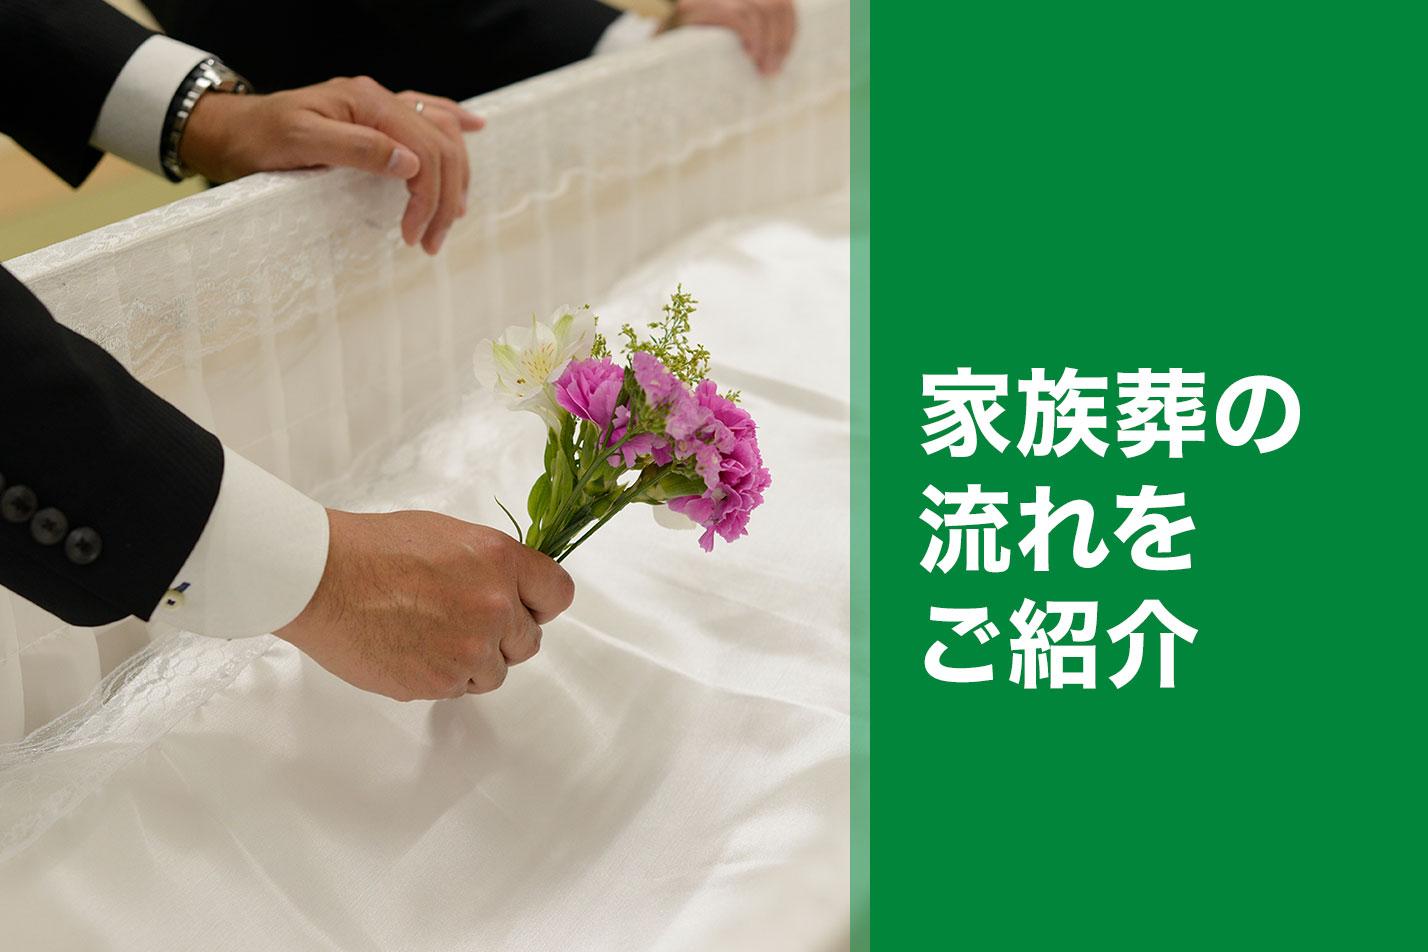  武蔵野市における家族葬の流れとは？のイメージ画像